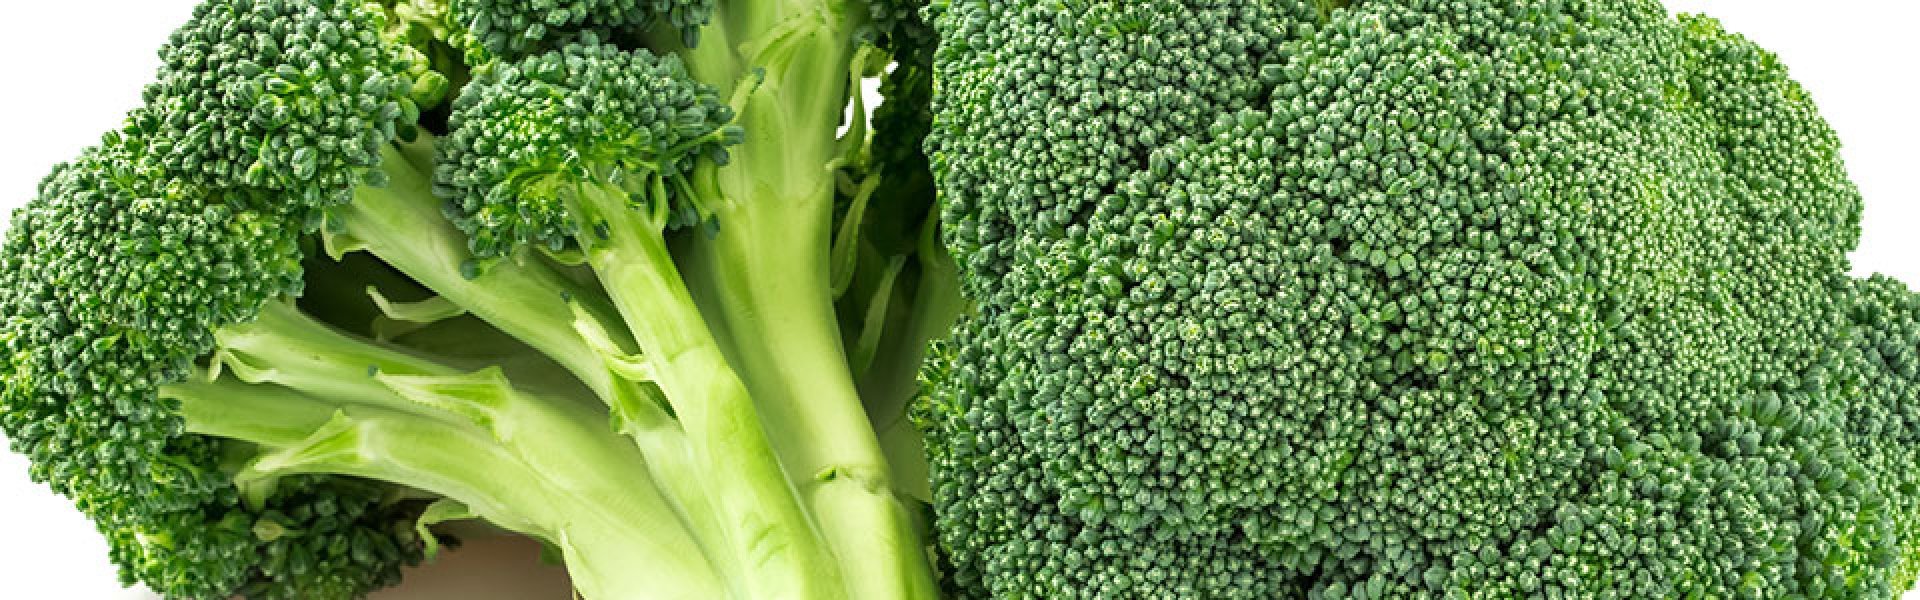 Broccoli bewaren als een echte chef